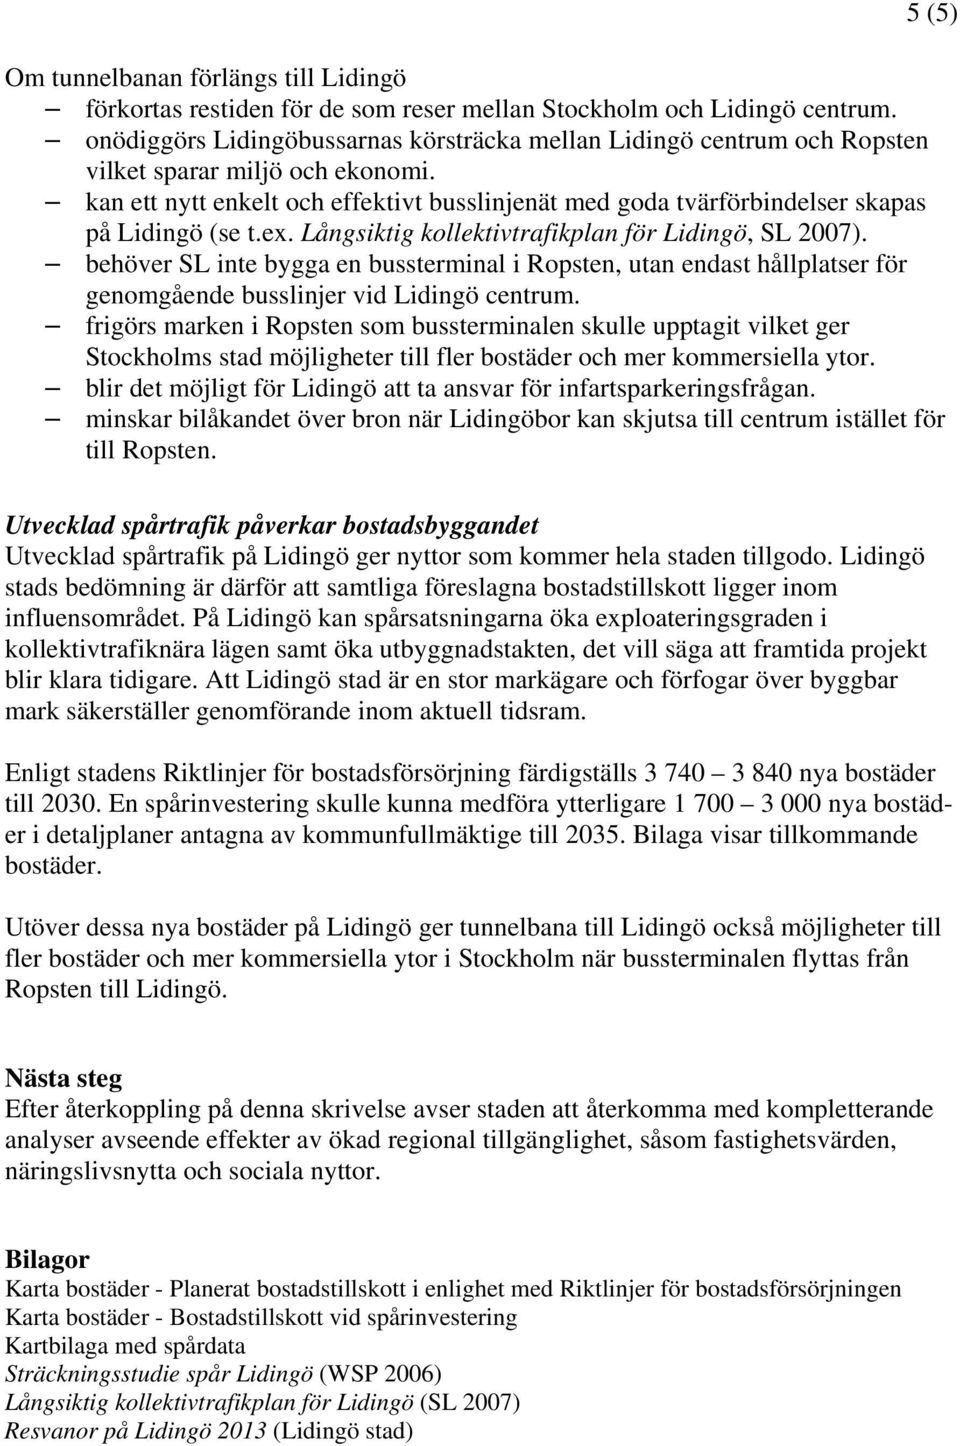 kan ett nytt enkelt och effektivt busslinjenät med goda tvärförbindelser skapas på Lidingö (se t.ex. Långsiktig kollektivtrafikplan för Lidingö, SL 2007).